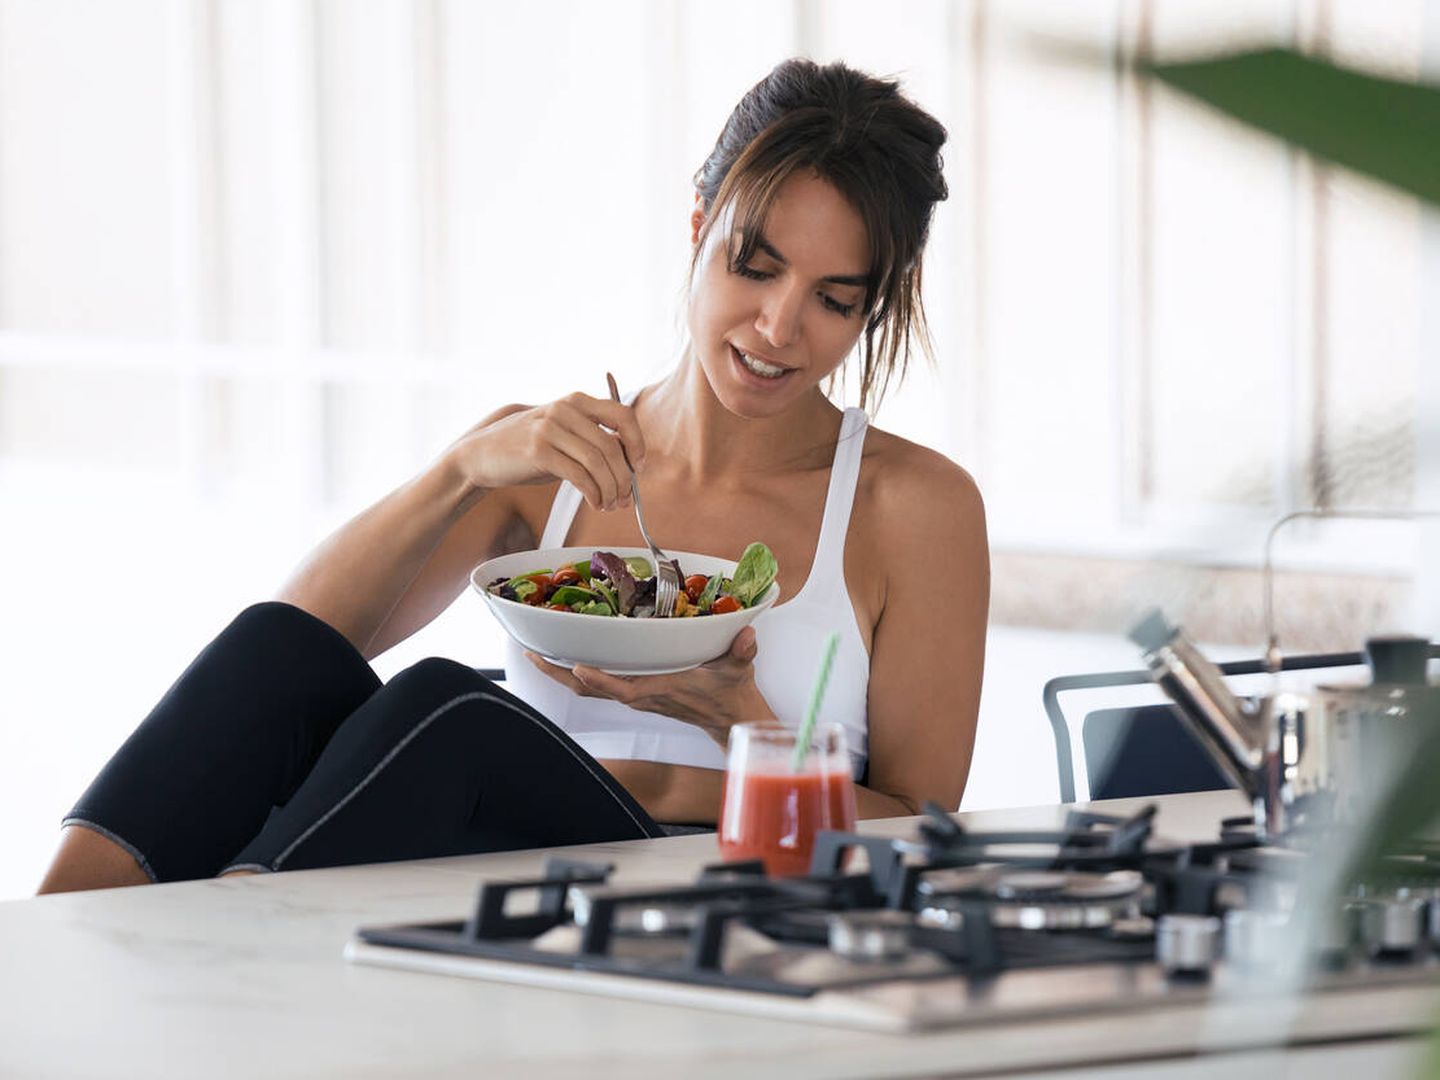 La dieta para las mujeres con SOP debería ser rica en vegetales, grasas saludables e hidratos de carbono complejos. (iStock)